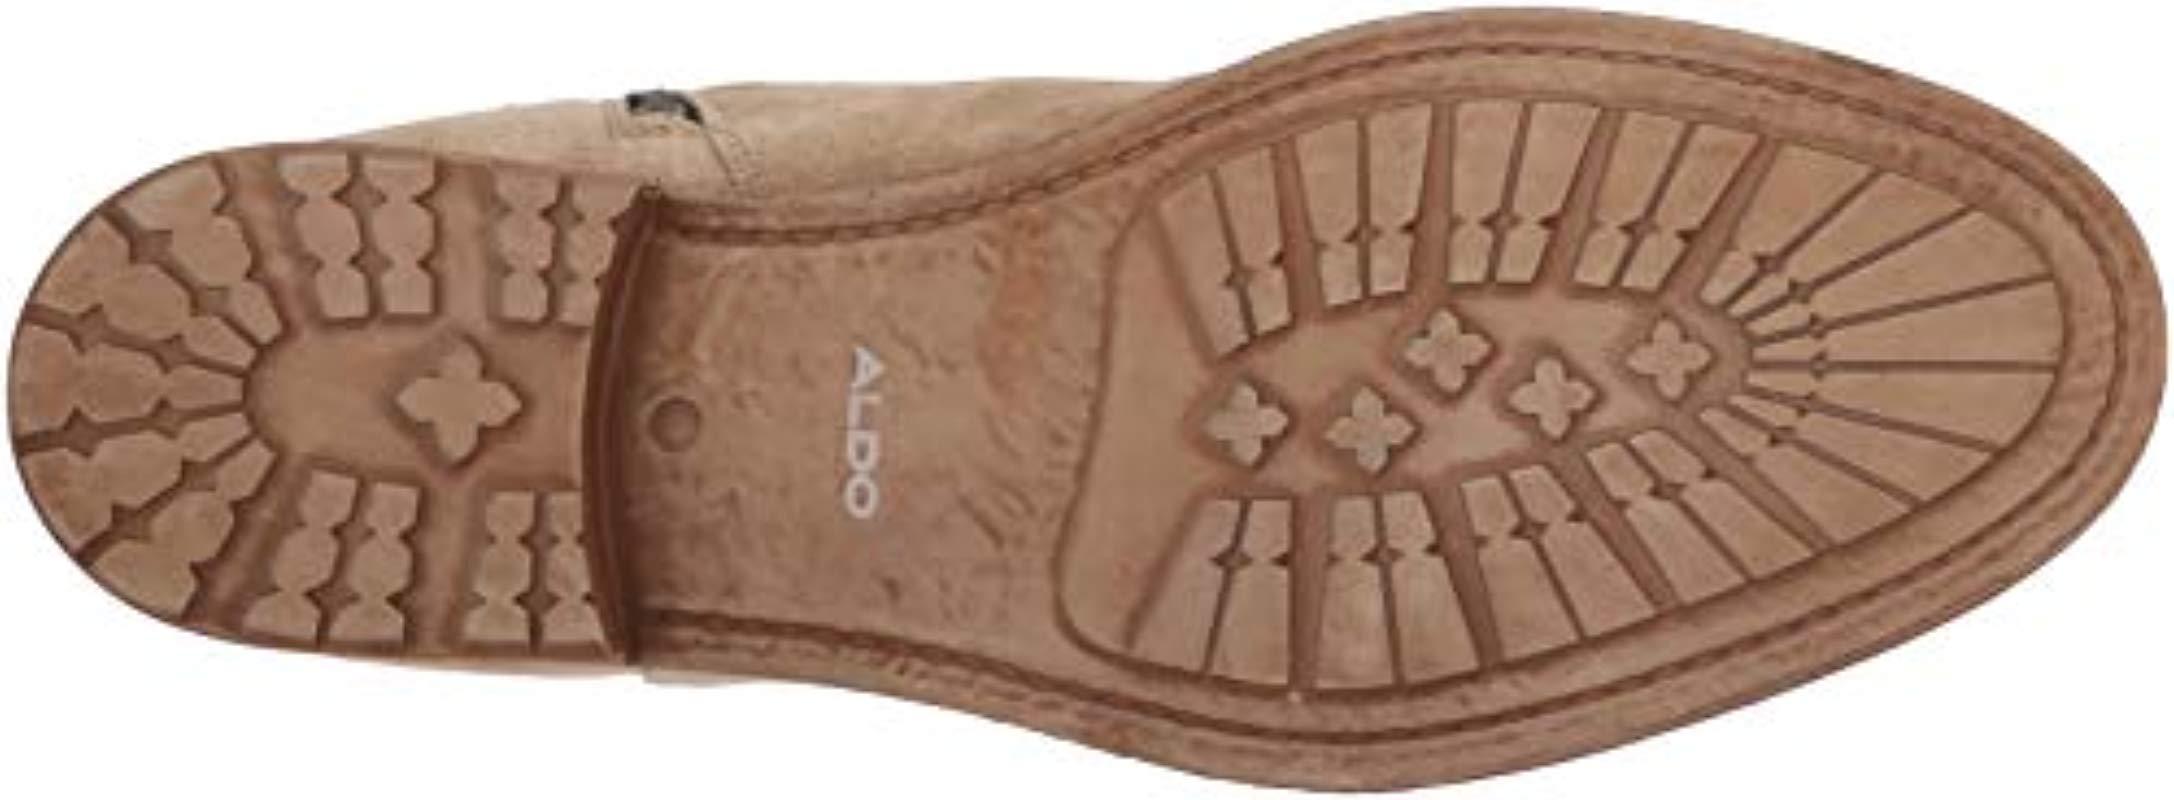 kuvert Forgænger ledsage ALDO Leather Kaoreria Ankle Boot, Beige, 13 D Us in Natural for Men - Lyst